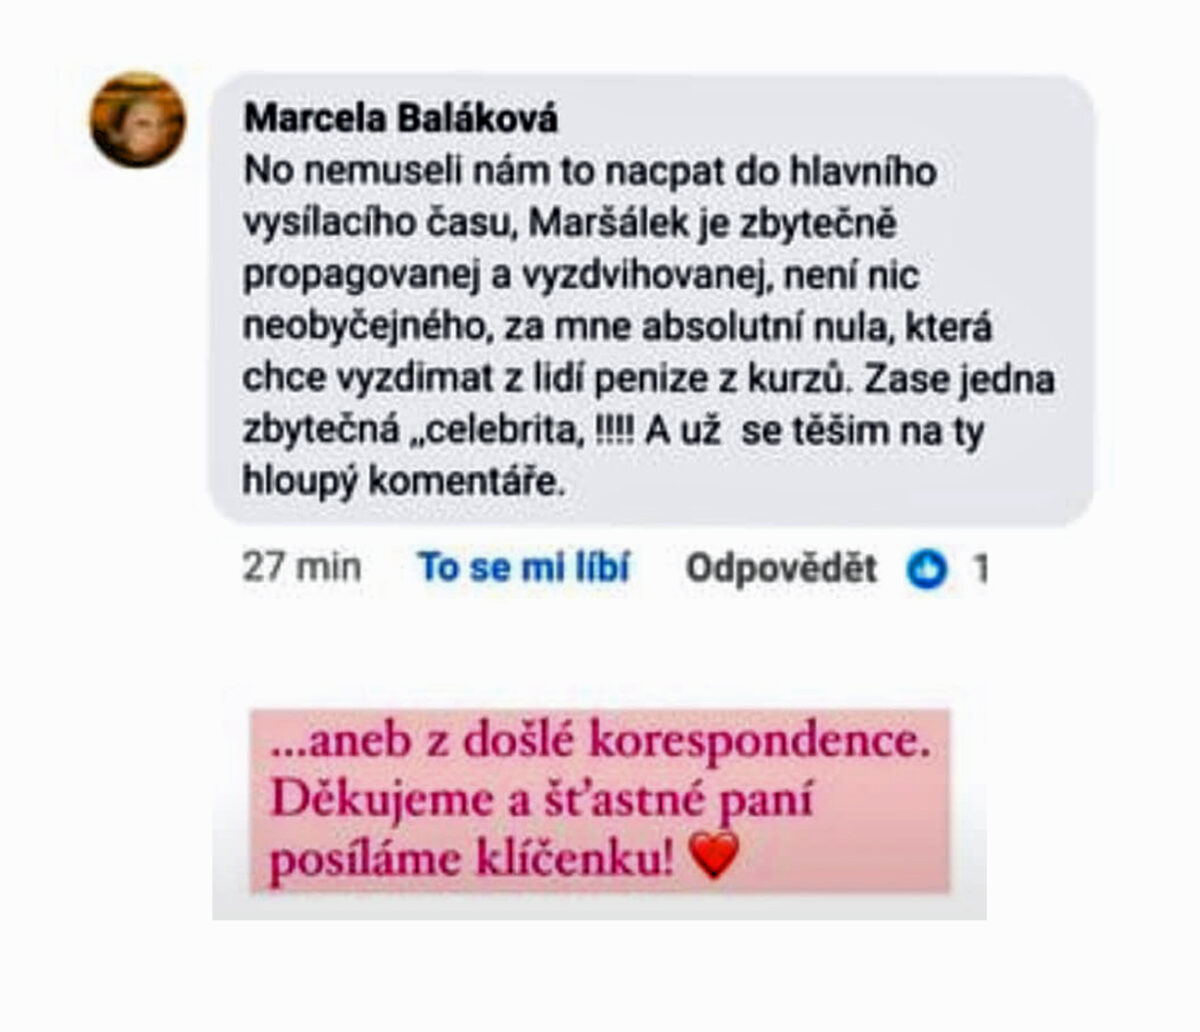 Nevybíravý útok jedné divačky na cukráře Josefa Maršálka kvůli pořadu Peče celá země.